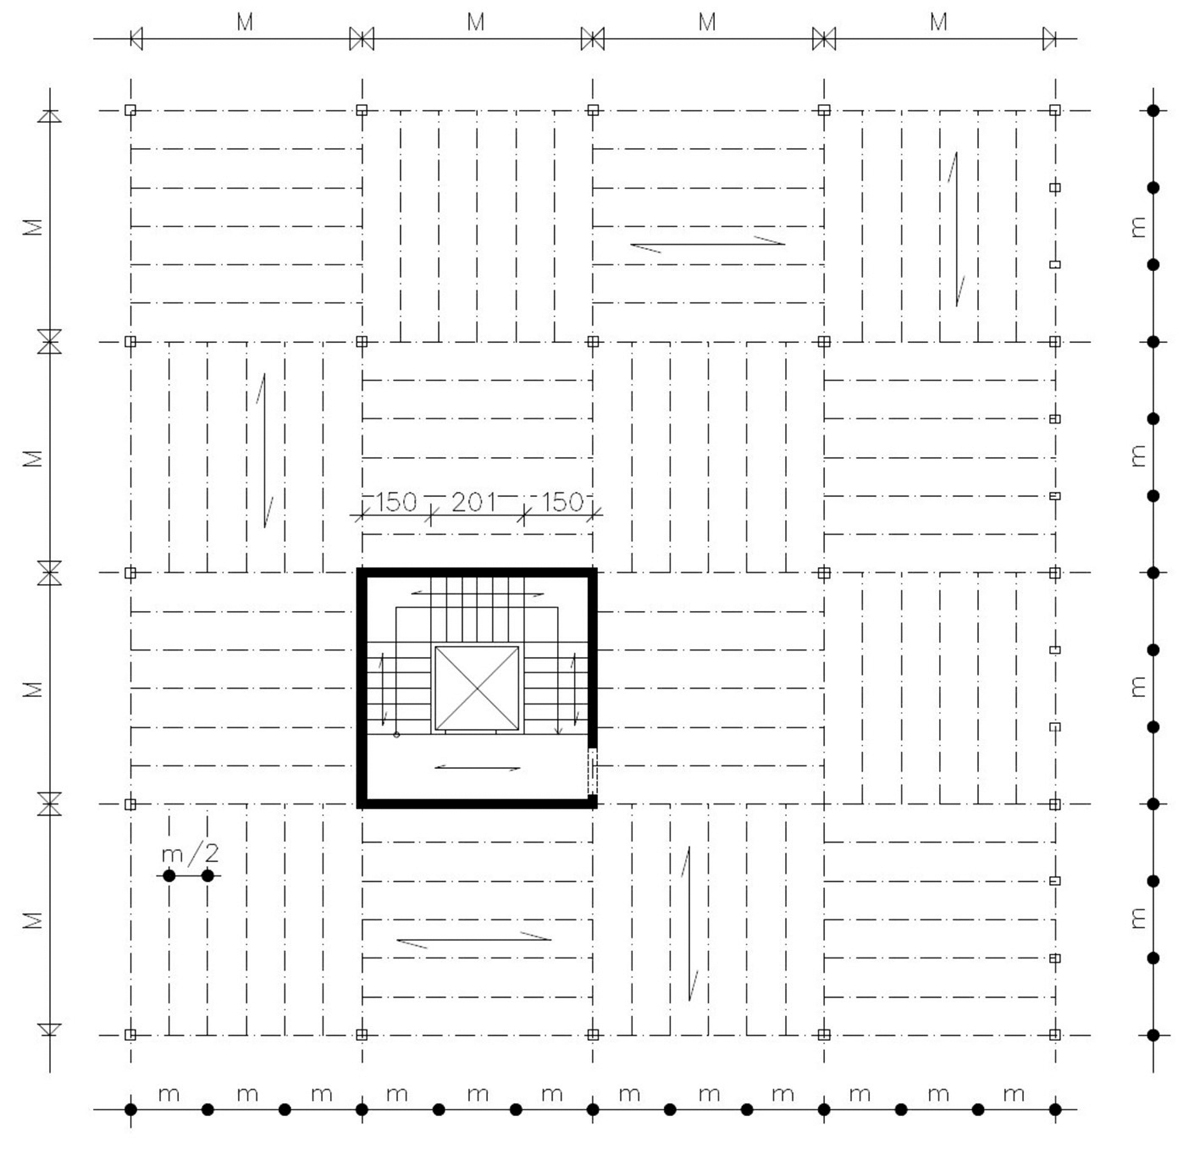 Obr. 14: Vizualizace, dřevěná skeletová konstrukce, modulační síť osmipodlažního bytového domu (Bílek–Peukert 2008)